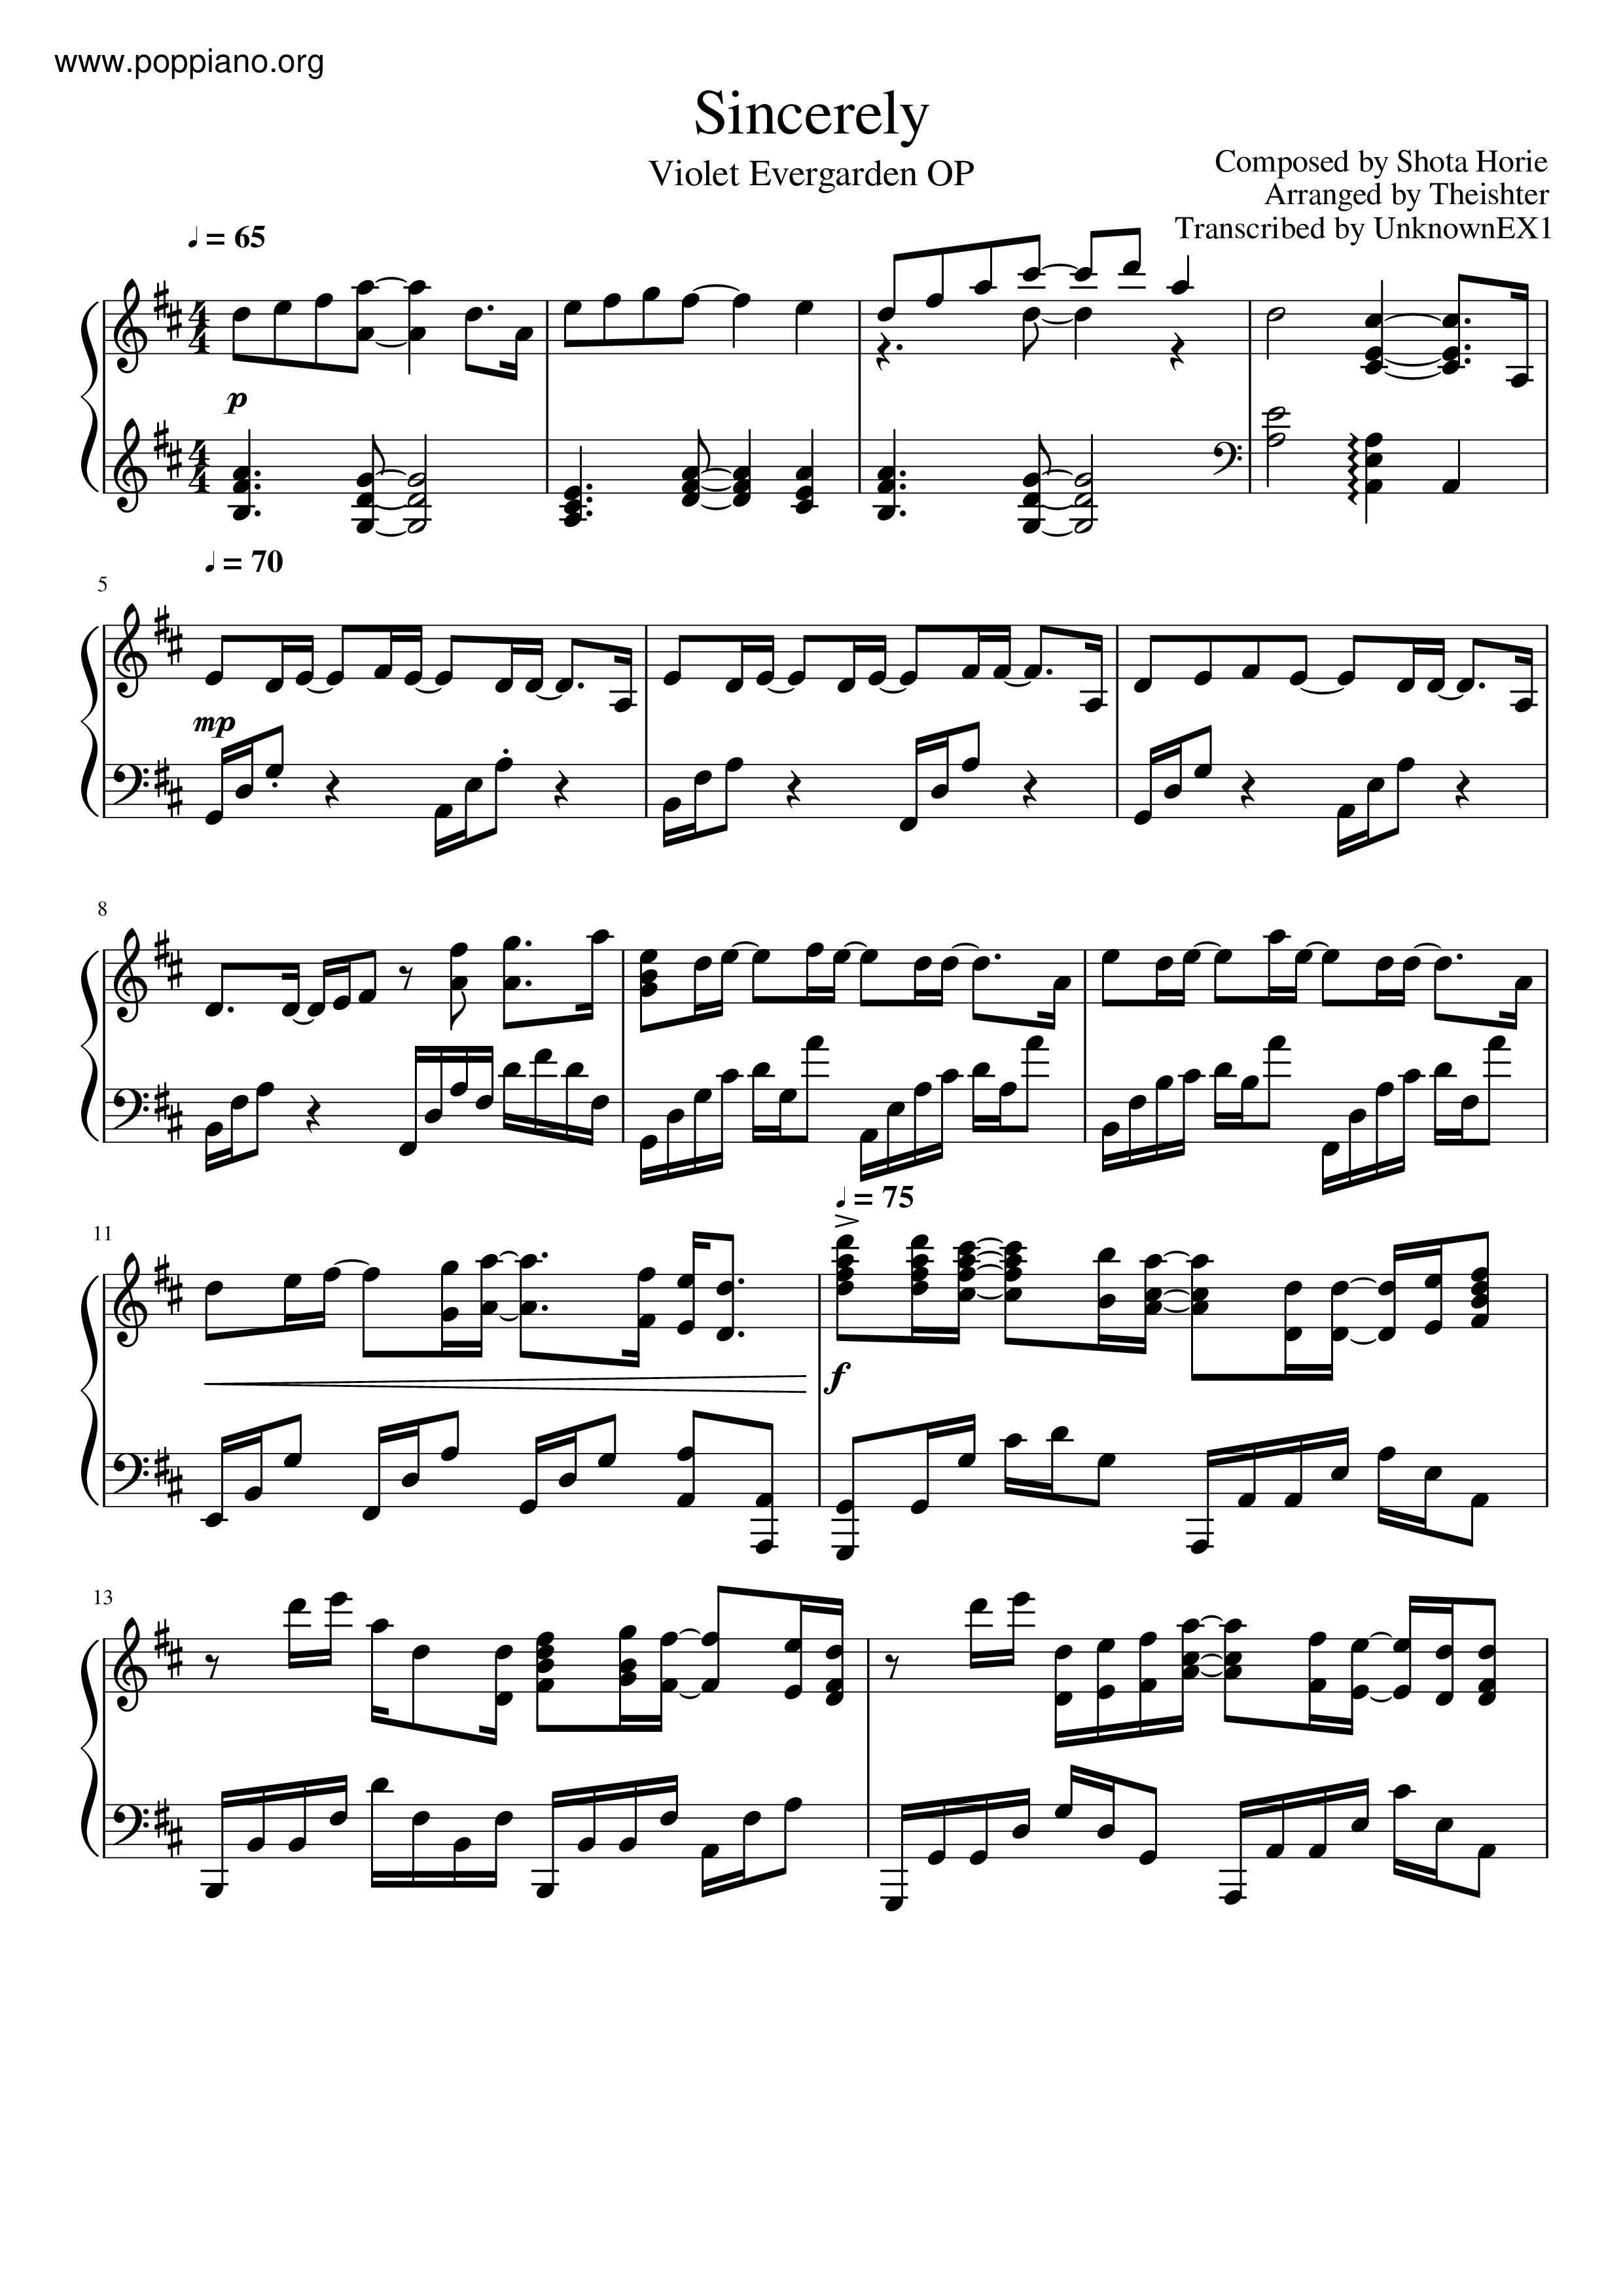 Violet Evergarden - Sincerelyピアノ譜